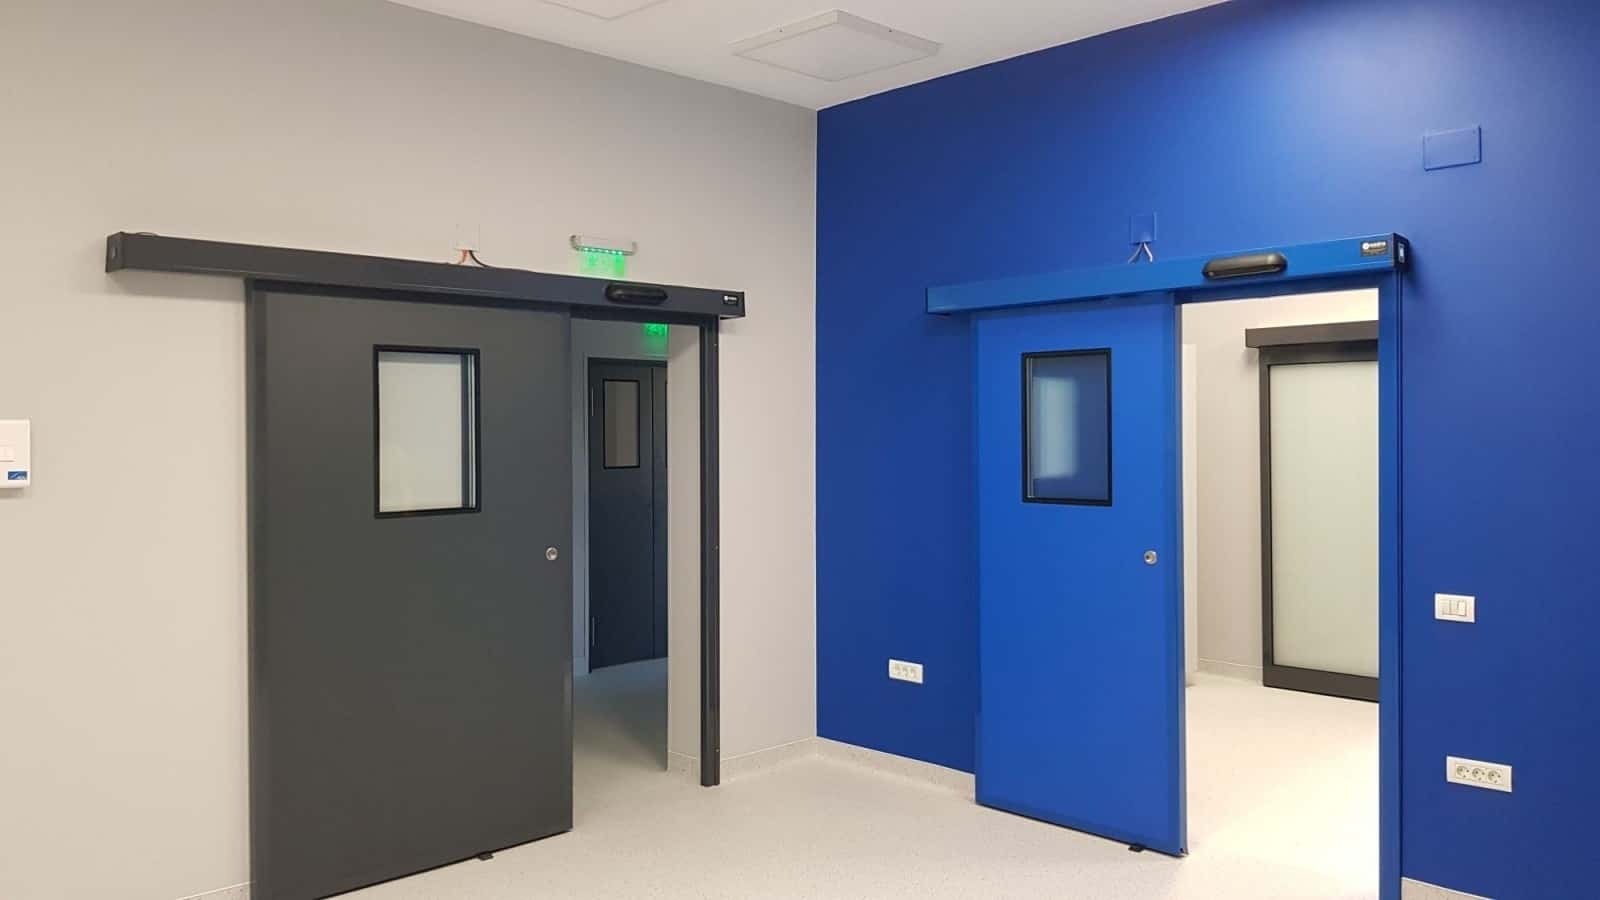 Sistem uși glisante automate pentru clinica Opthmax din Ploiești, mentenanță uși medicale